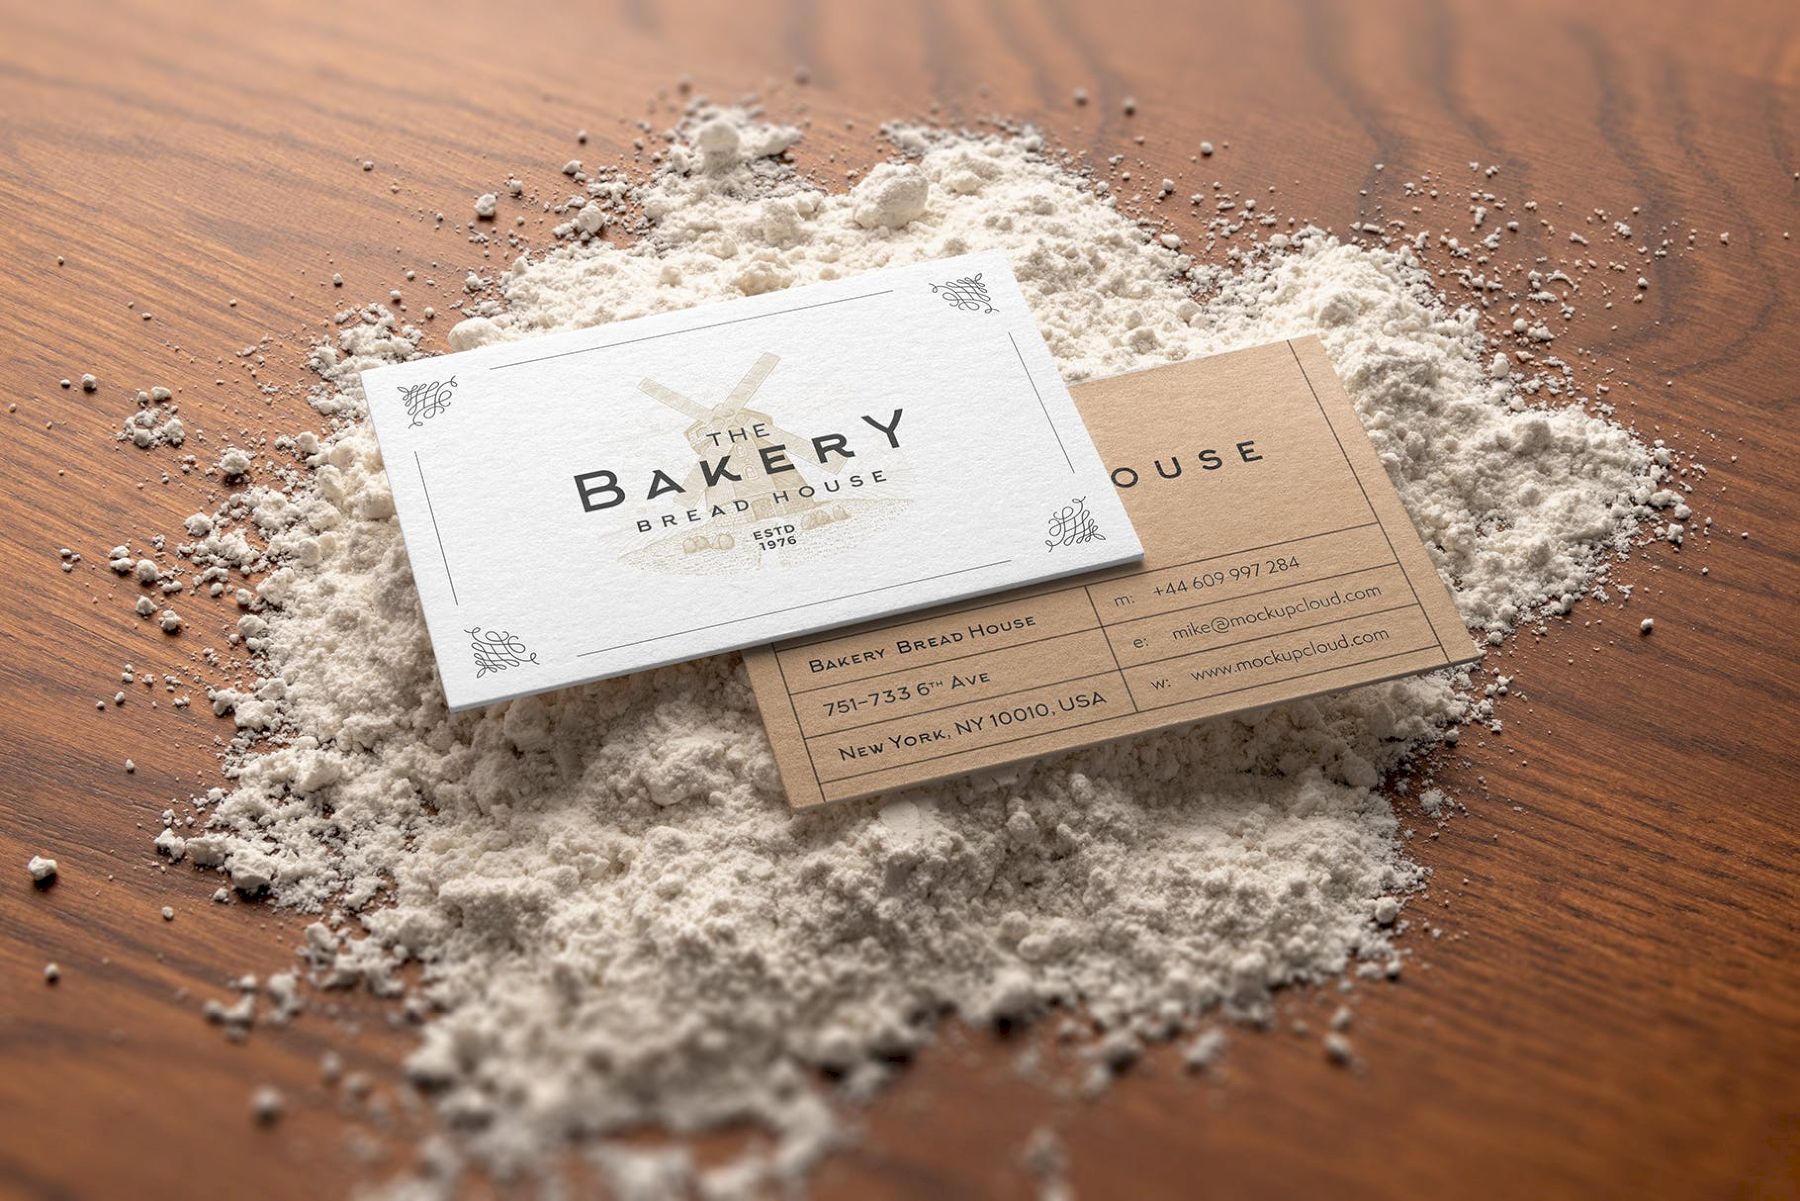 面包店品牌样机套件 Bakery Branding Mockup Kit插图22